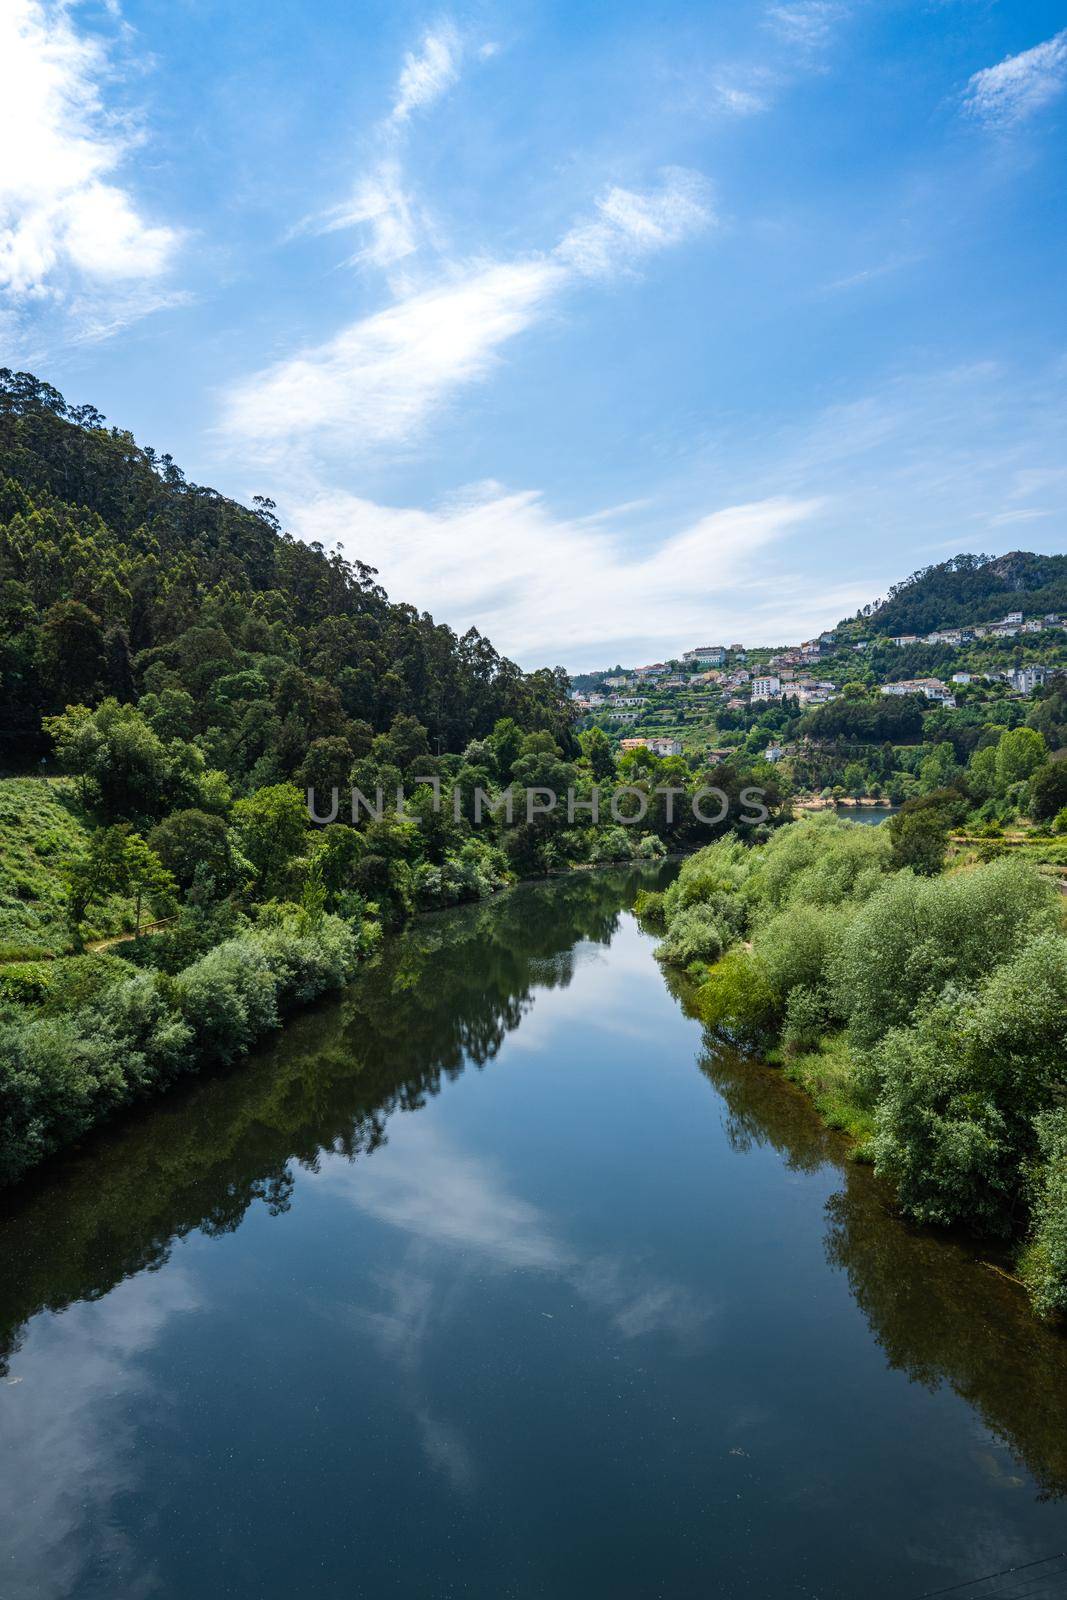 View from the bridge over Mondego river in Penacova - Portugal.